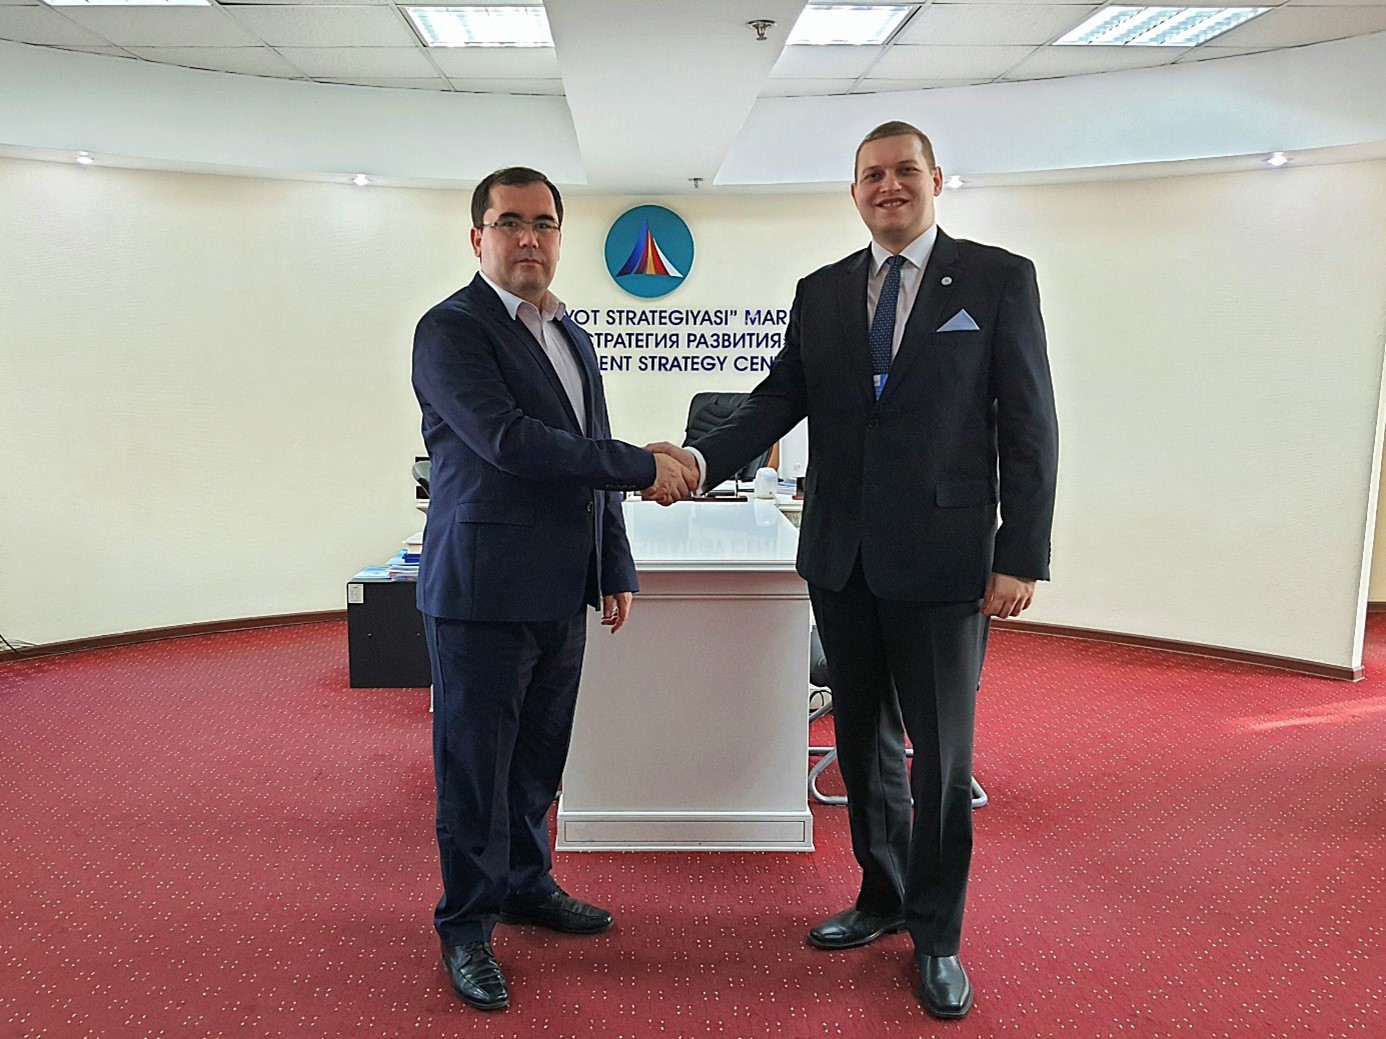 Gespräch mit Dr. Eldor Tulyakov, Direktor der NGO „Development Strategy Center“. Im Februar 2020 besuchte Dr. Tulyakov mit einer usbekischen Delegation die Bundesgeschäftsstelle. Die aktive Beteiligung von zivilgesellschaftlichen und wirtschaftlichen Akteuren bei der Gestaltung der Reformpolitik in Usbekistan ist ein zentrales Anliegen seines Zentrums.